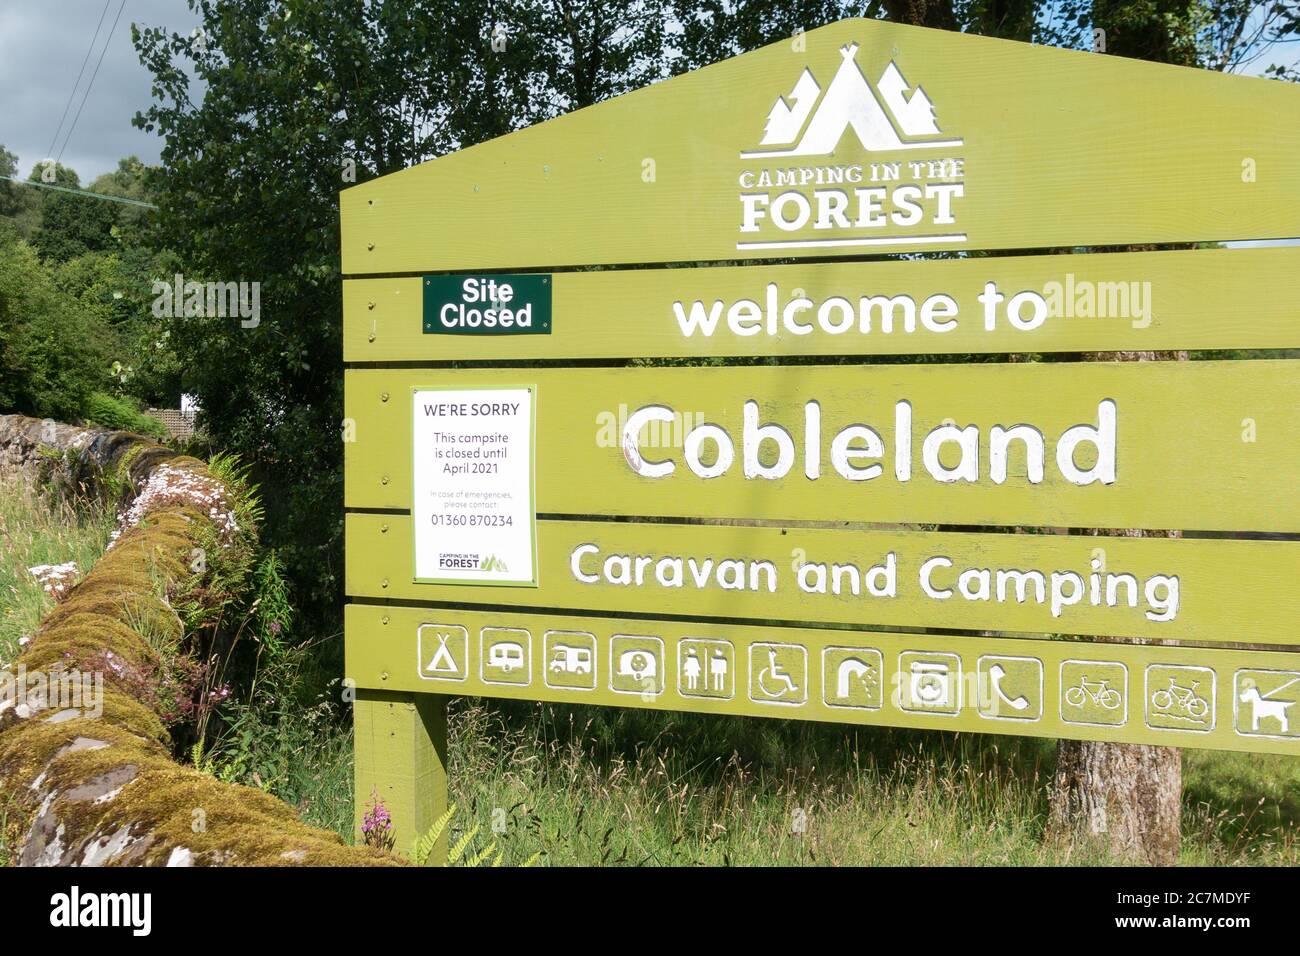 Campeggio Cobleland, Trossachs Camping nel sito della foresta - chiuso fino ad aprile 2021 a causa del segnale pandemico coronavirus - Scozia, Regno Unito Foto Stock